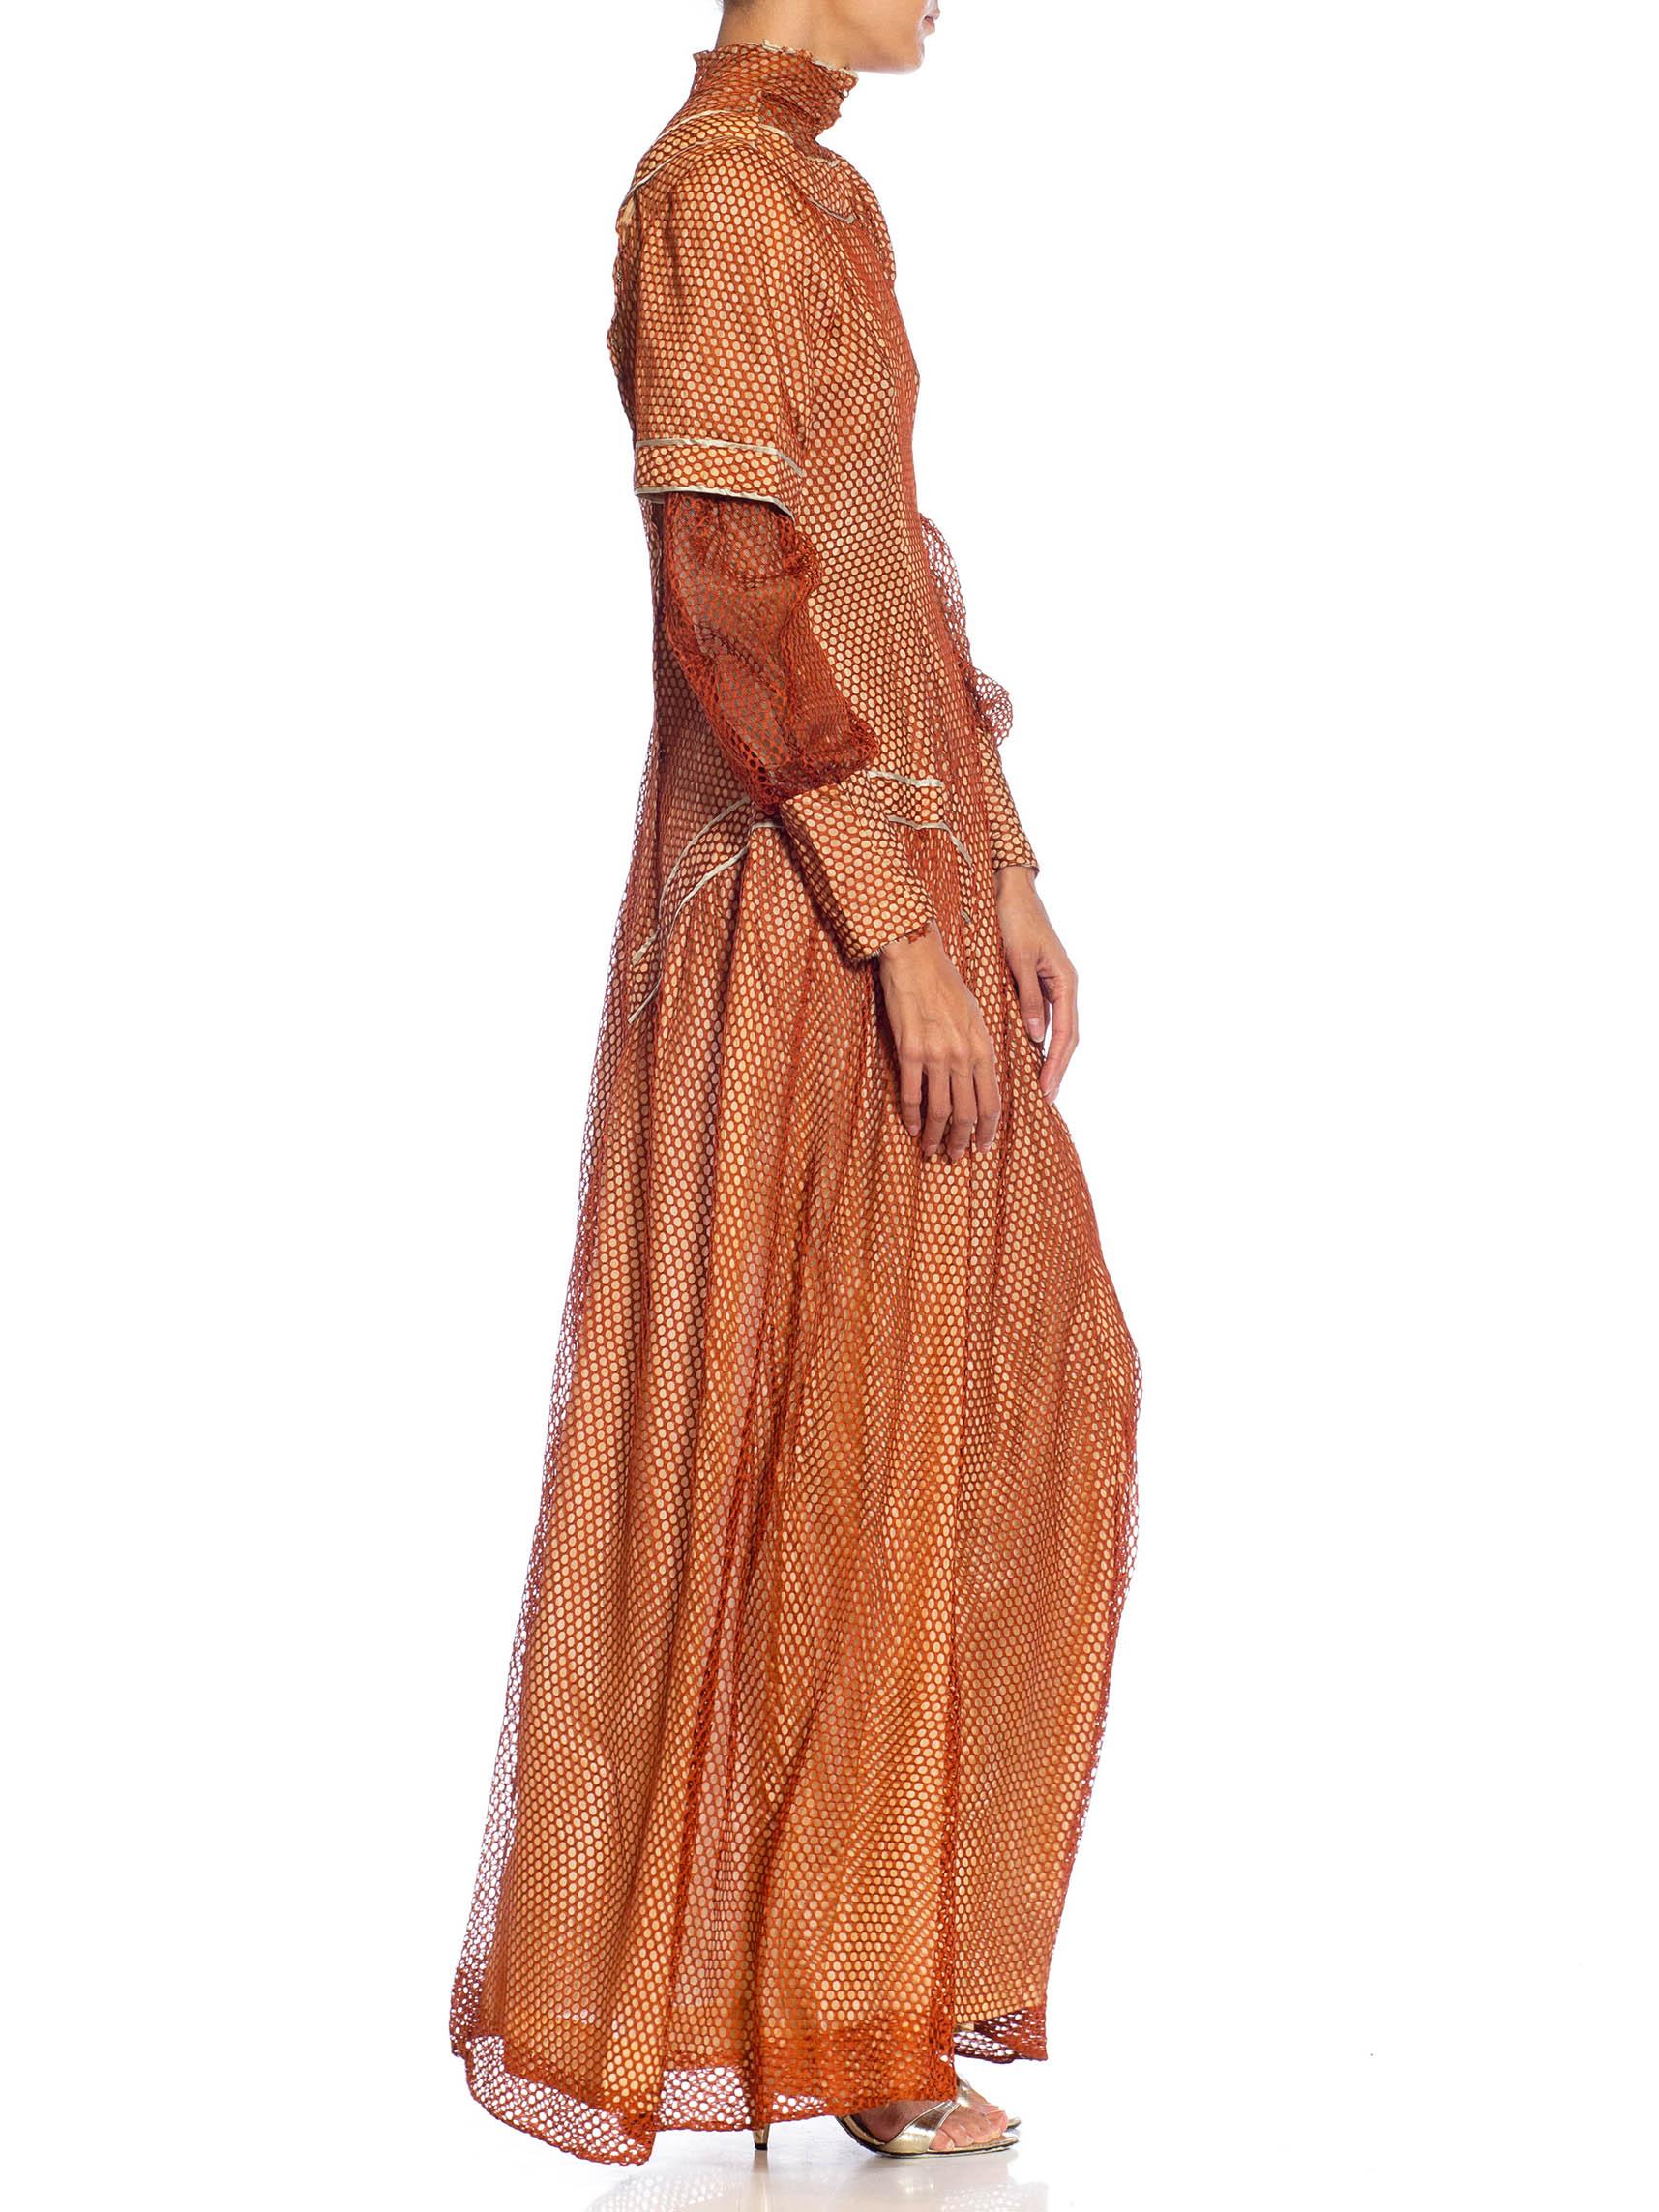 Marron Robe édouardienne en maille de soie bronze sur soie rose pâle avec manches longues en vente